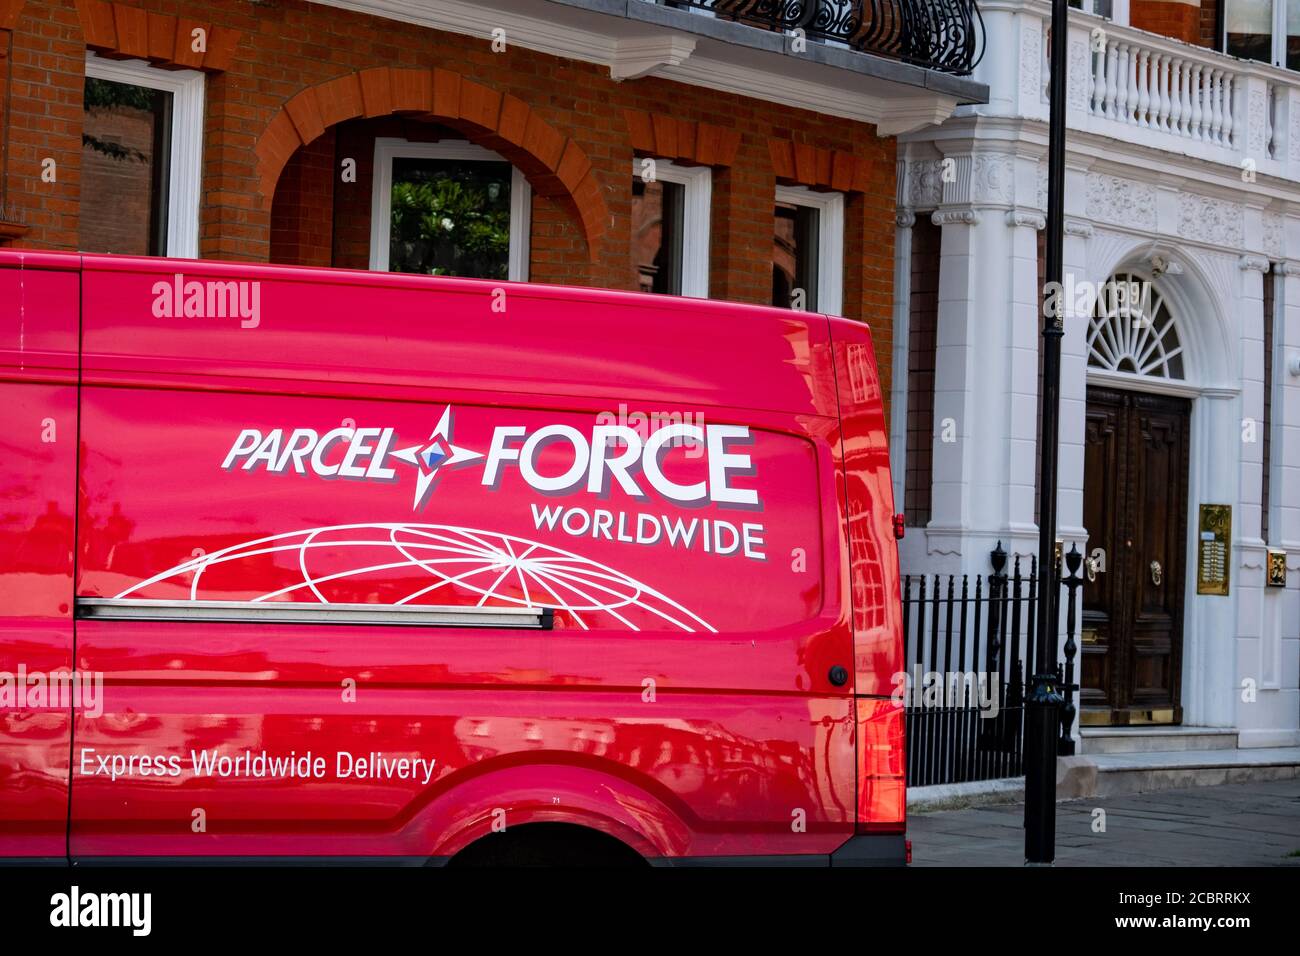 Londra- Parcelforce, un servizio di posta inglese Foto Stock